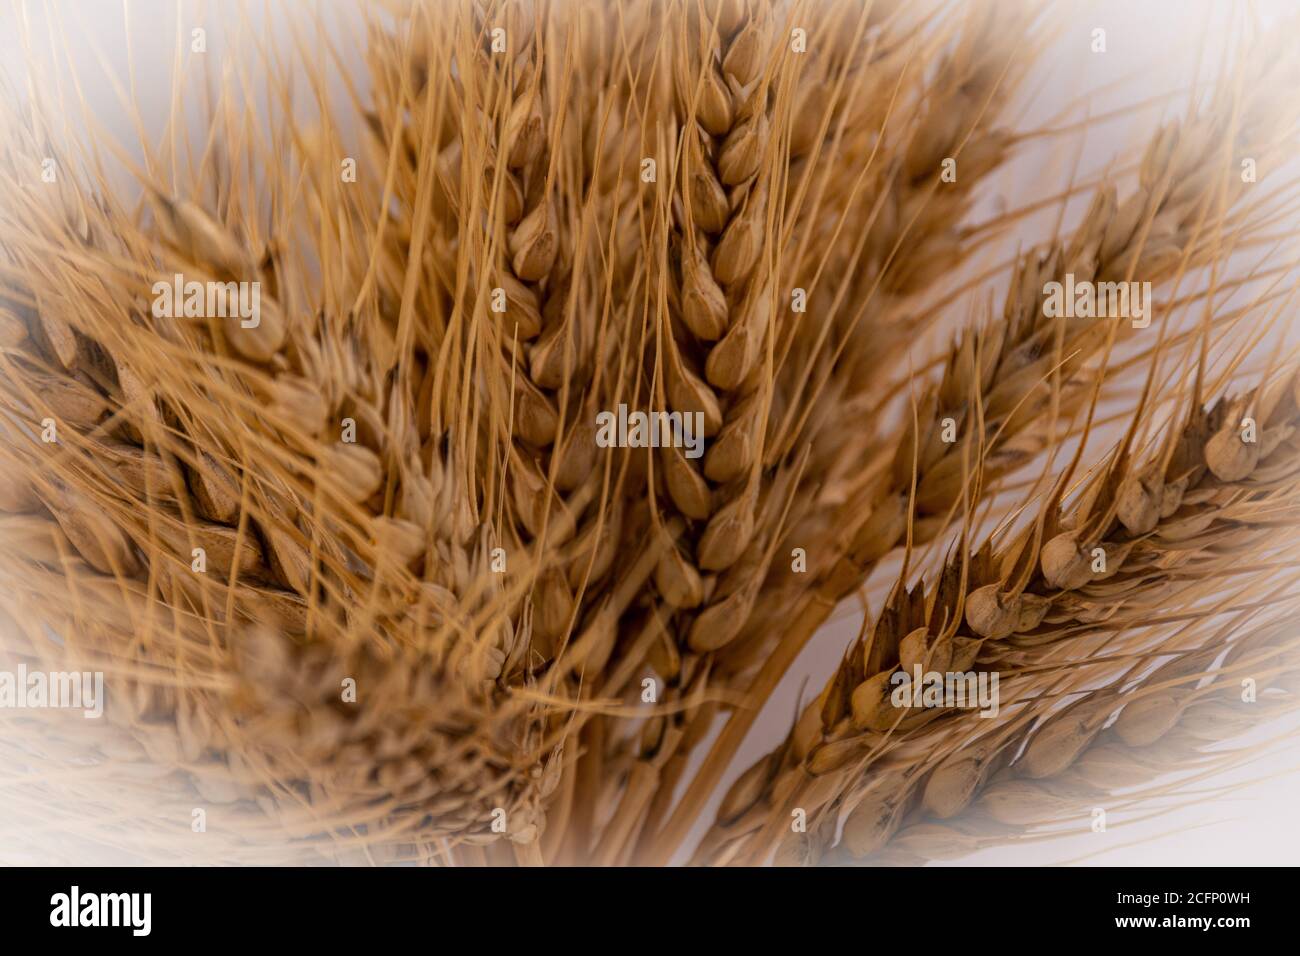 Mazzo di orecchie di grano su sfondo neutro. Concetto di dieta mediterranea. Con vignettatura Foto Stock